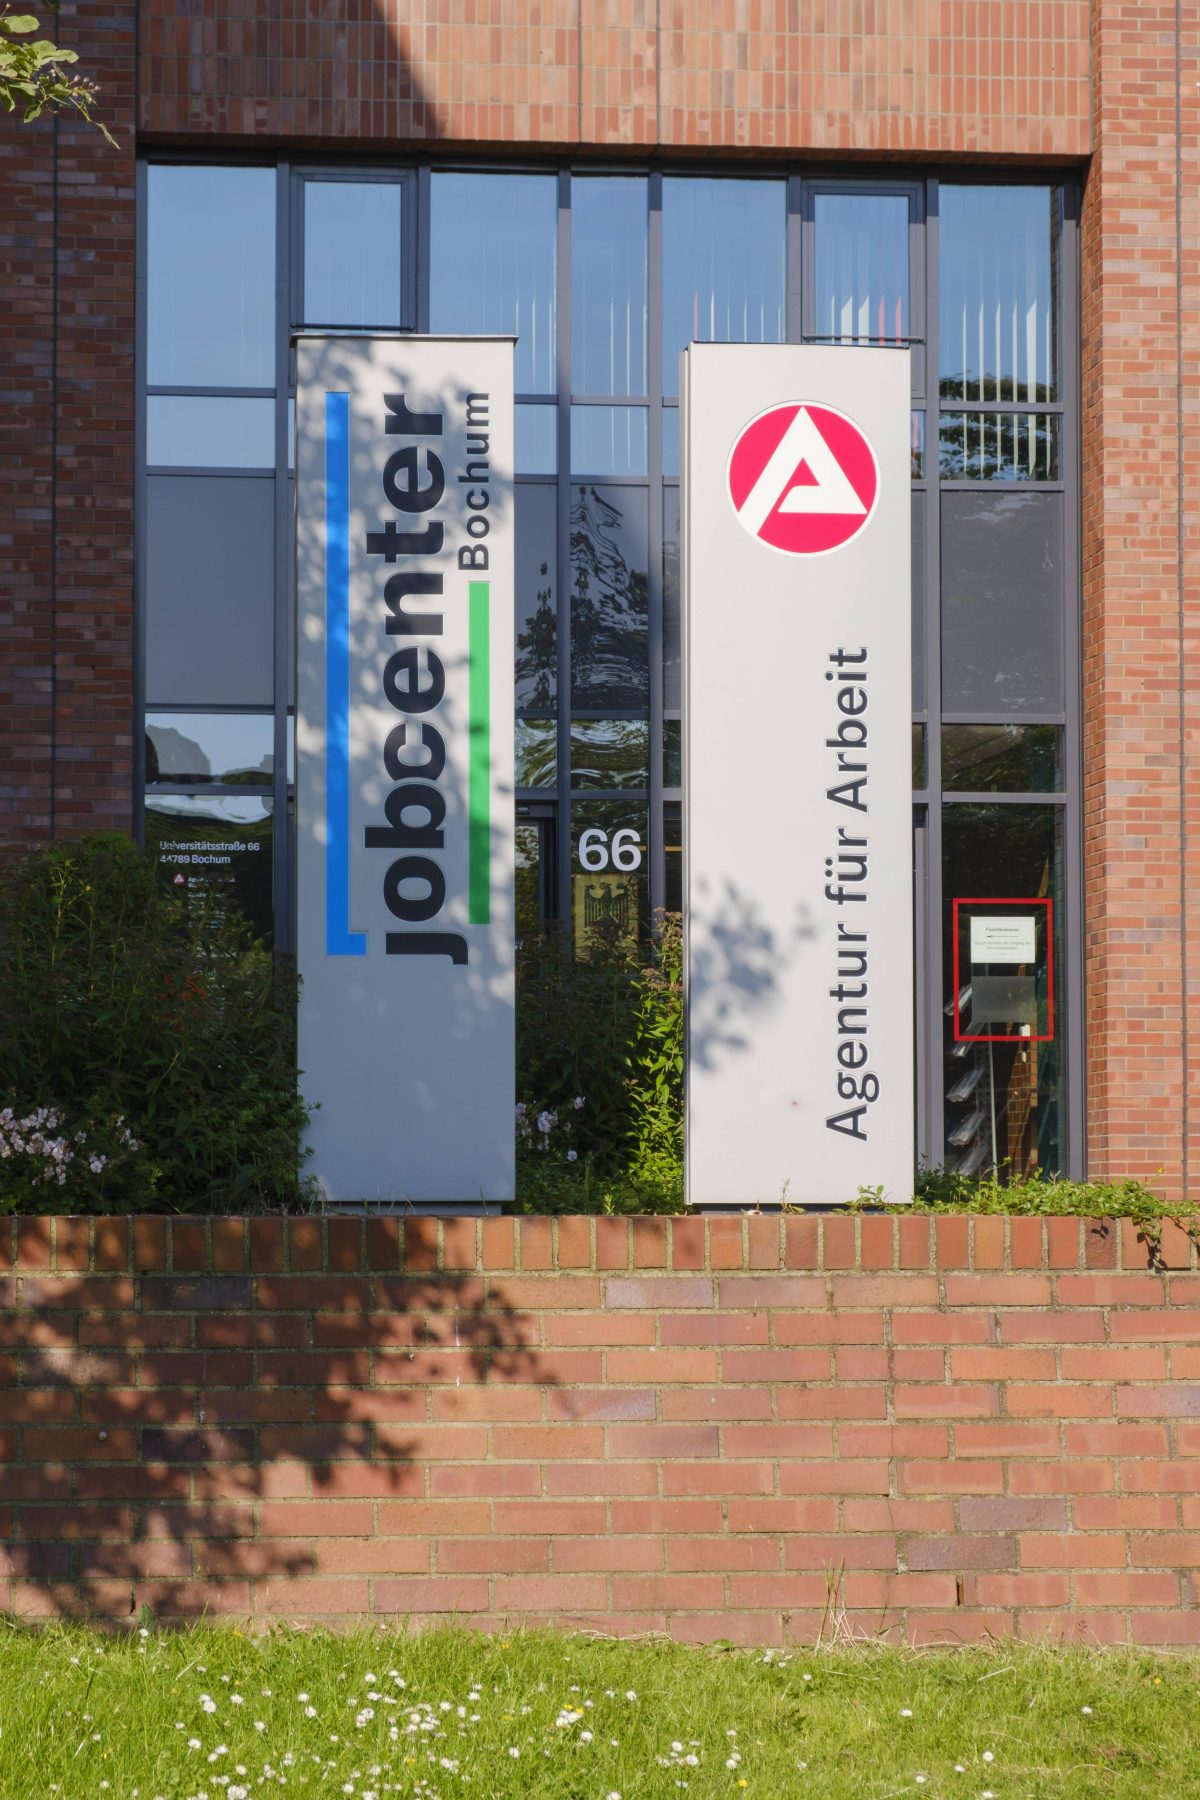 Jobcenter Bochum wird von Ehepaar angeklagt. Dieses bekommen seit Monaten keine Unterstützung.